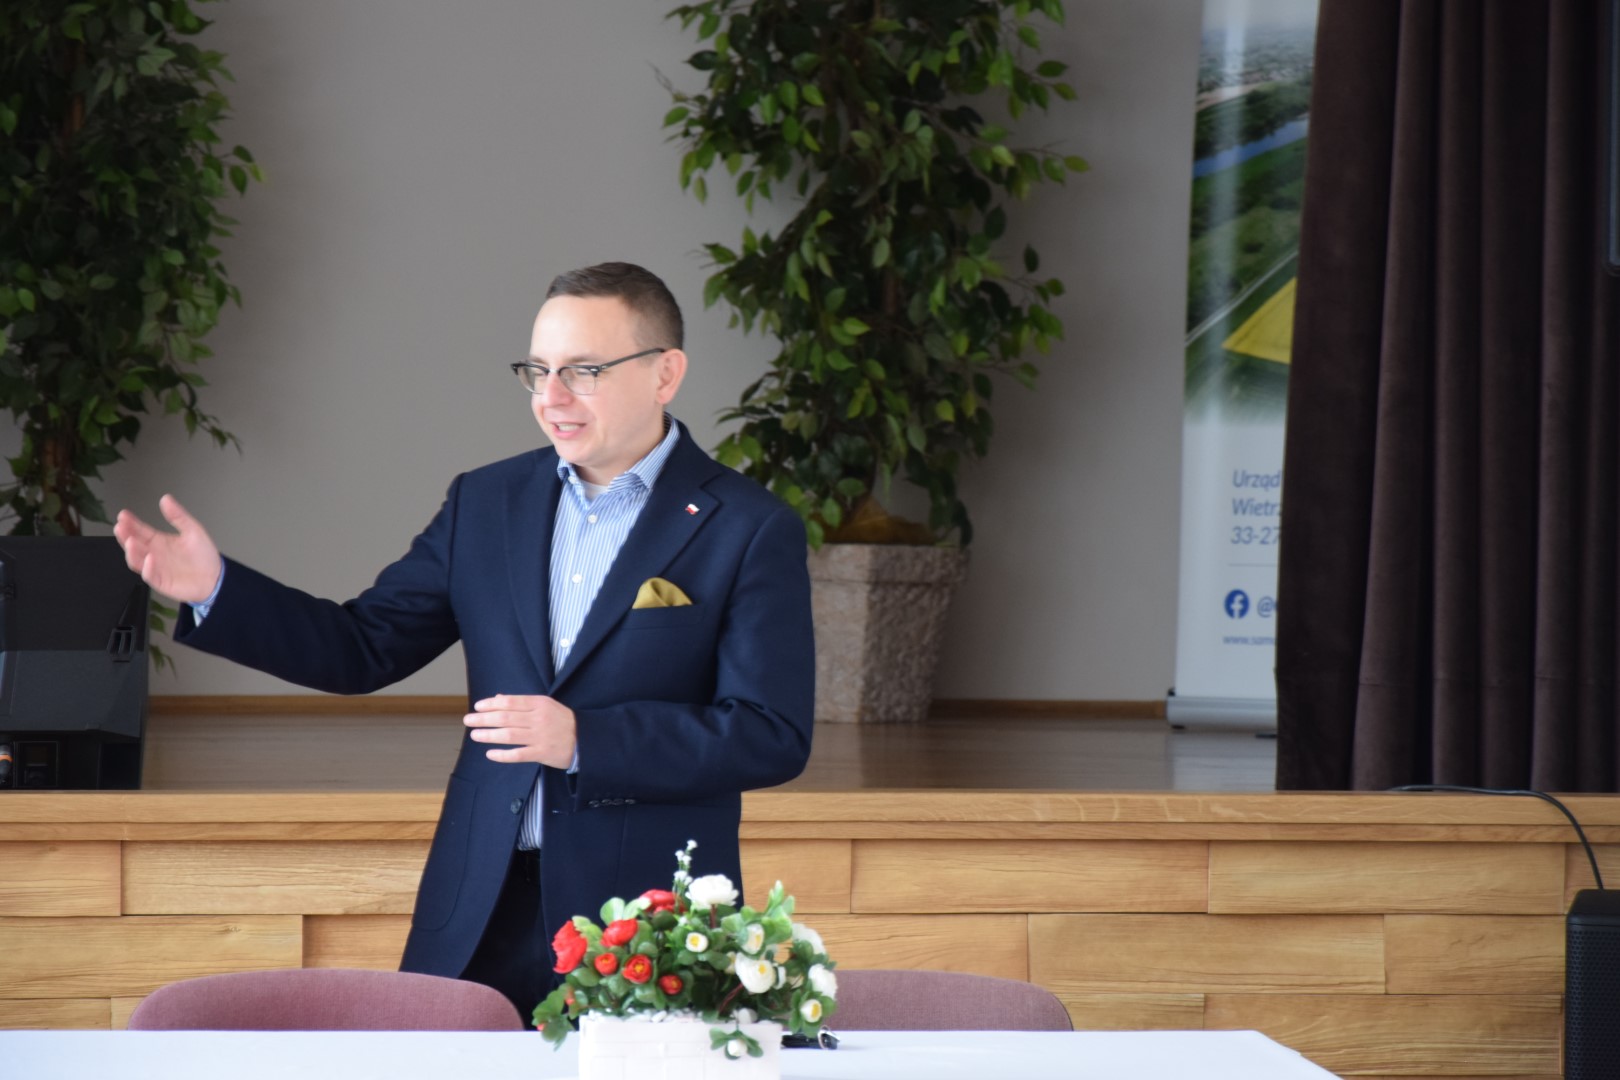 zdjęcie przedstawia Posła na Sejm RP Piotra Saka stojącego za stołem i wygłaszającego krótkie przemówienie